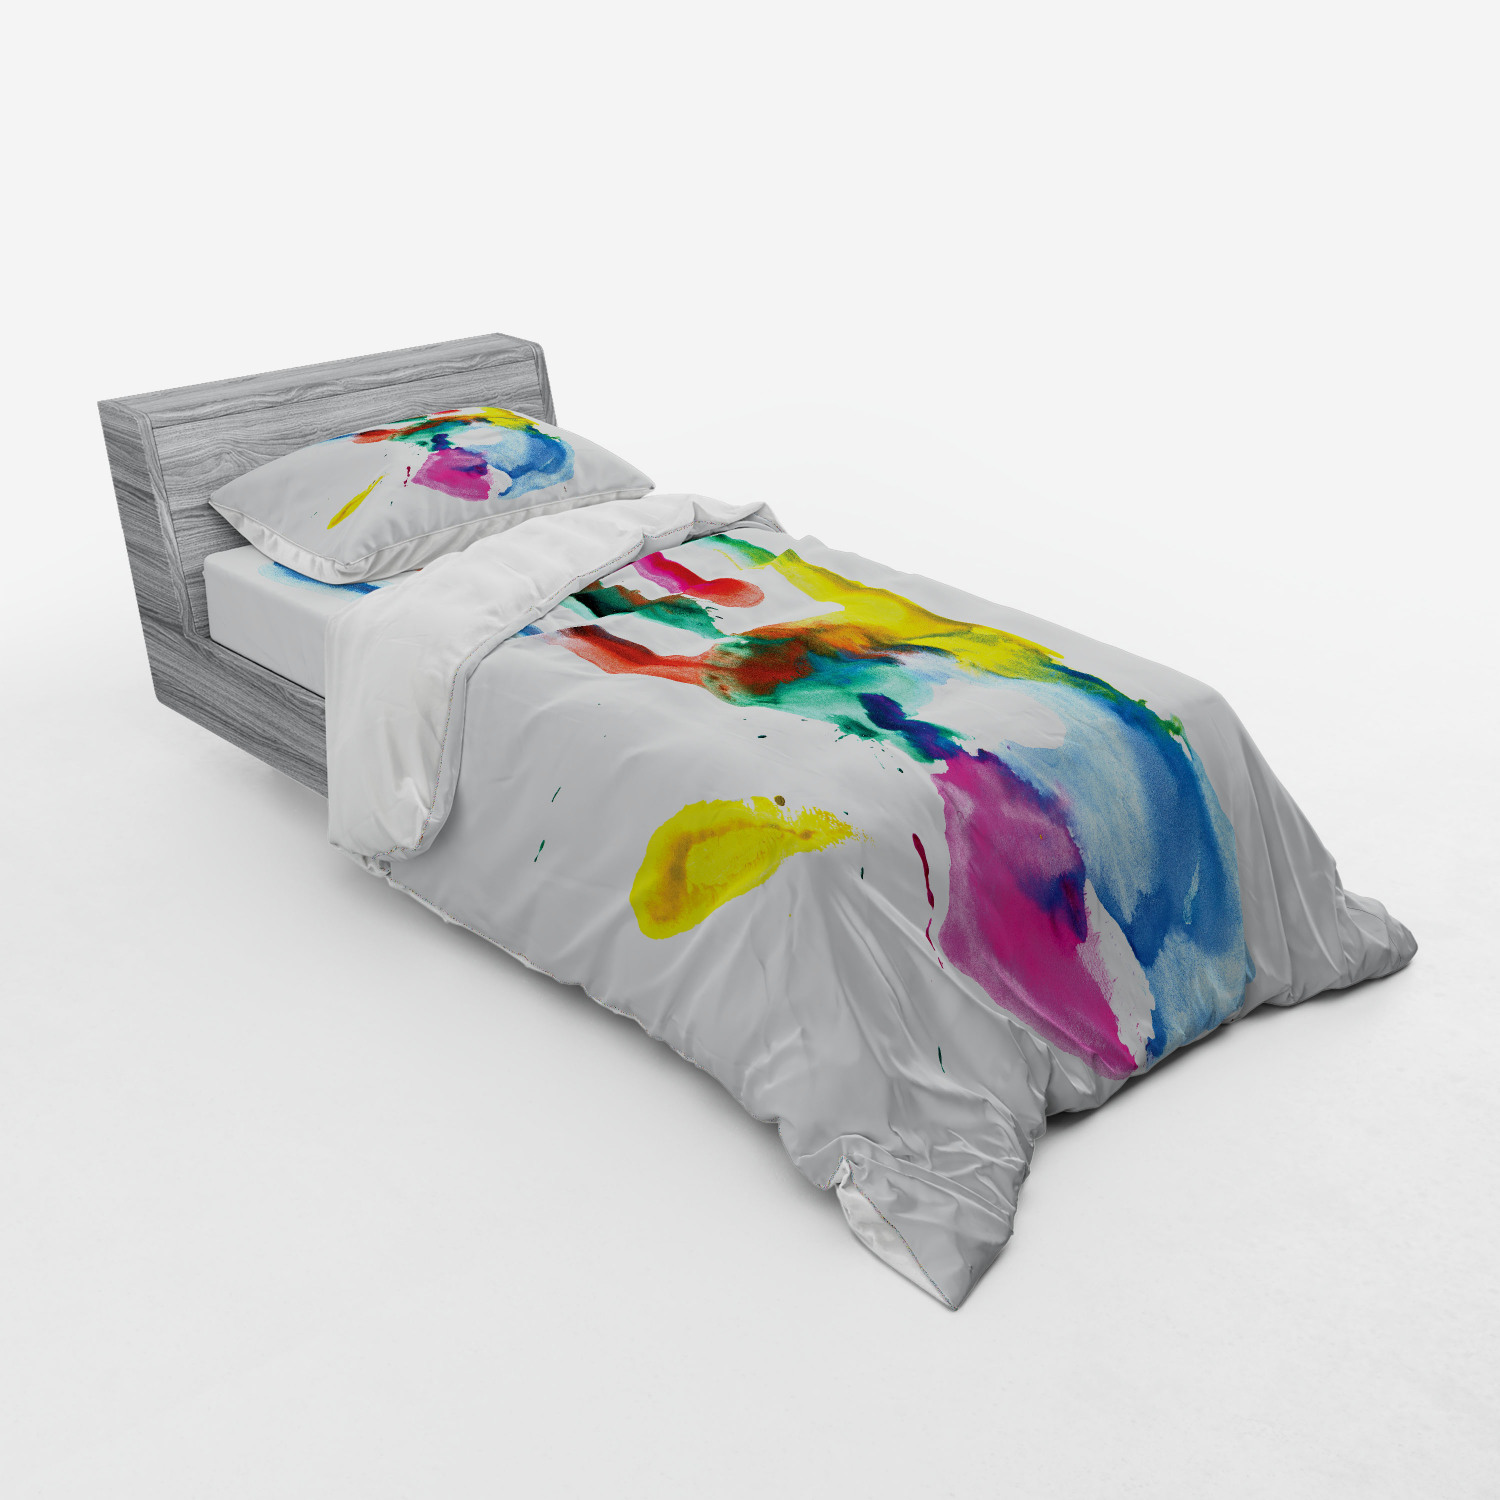 watercolor bedding